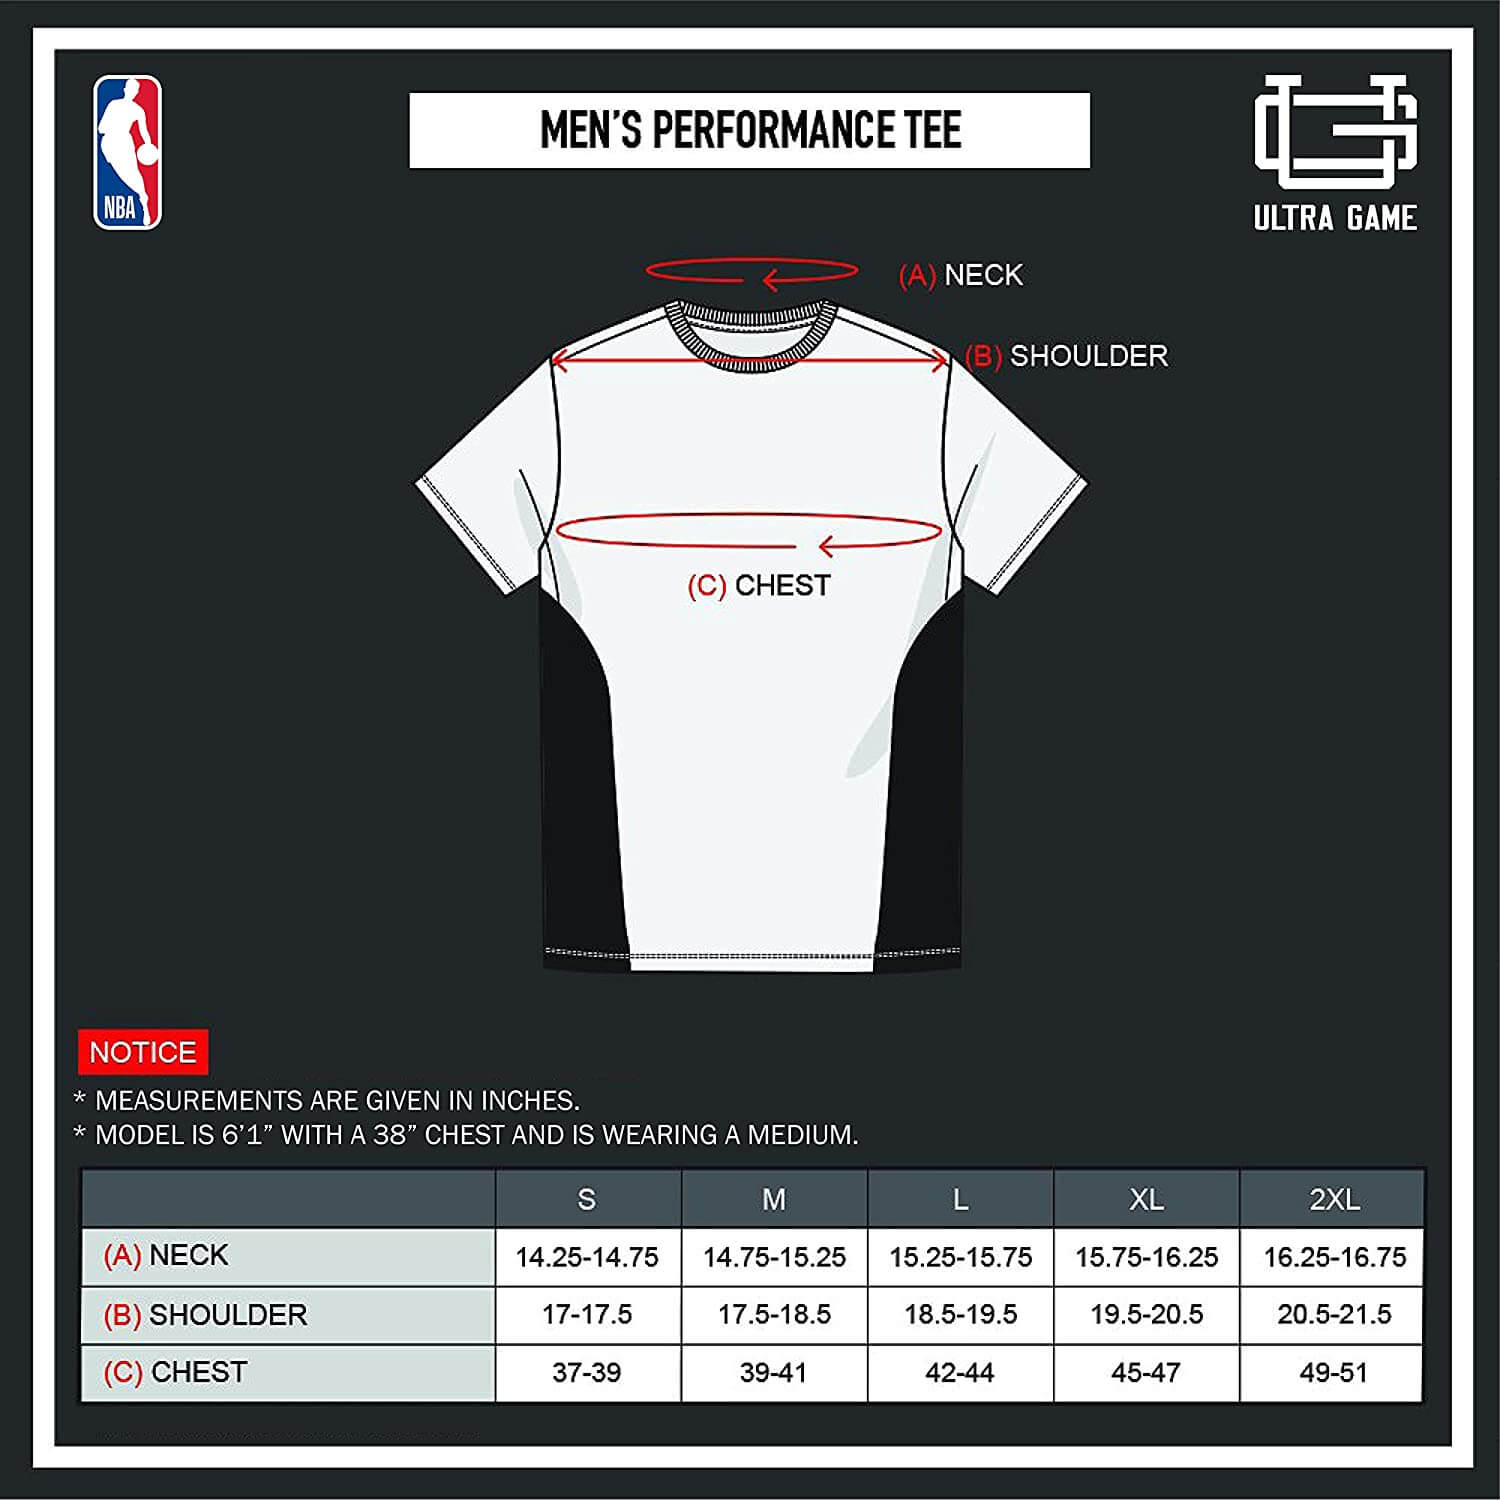 NBA Brooklyn Nets Men's Short Sleeve Tee|Brooklyn Nets